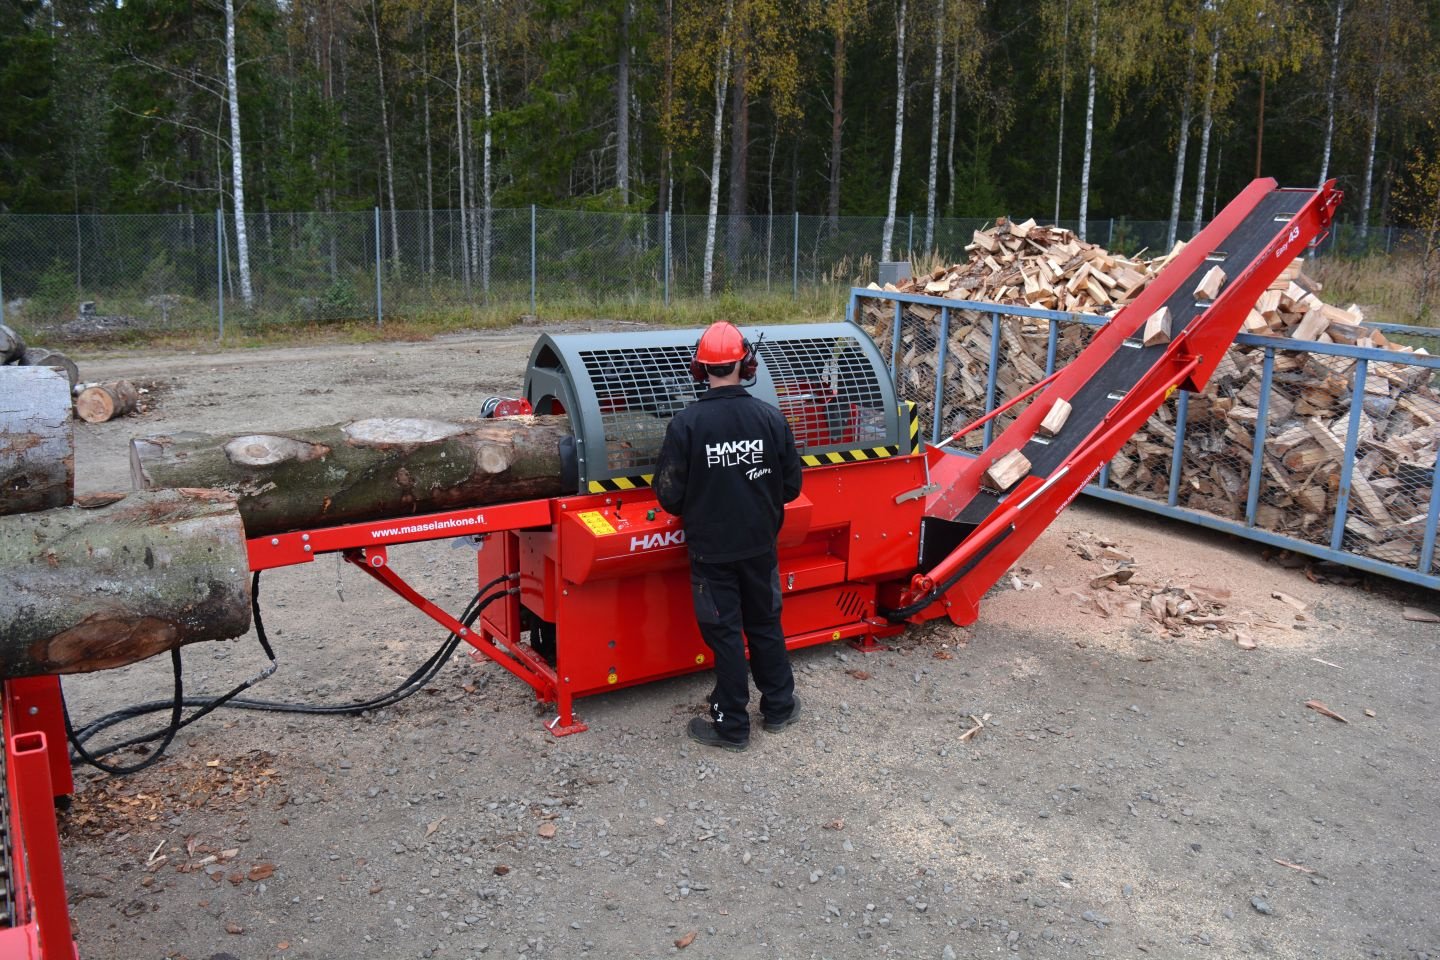 Holzspalter des Typs Hakki Pilke 43 PRO, Gebrauchtmaschine in Grou (Bild 1)